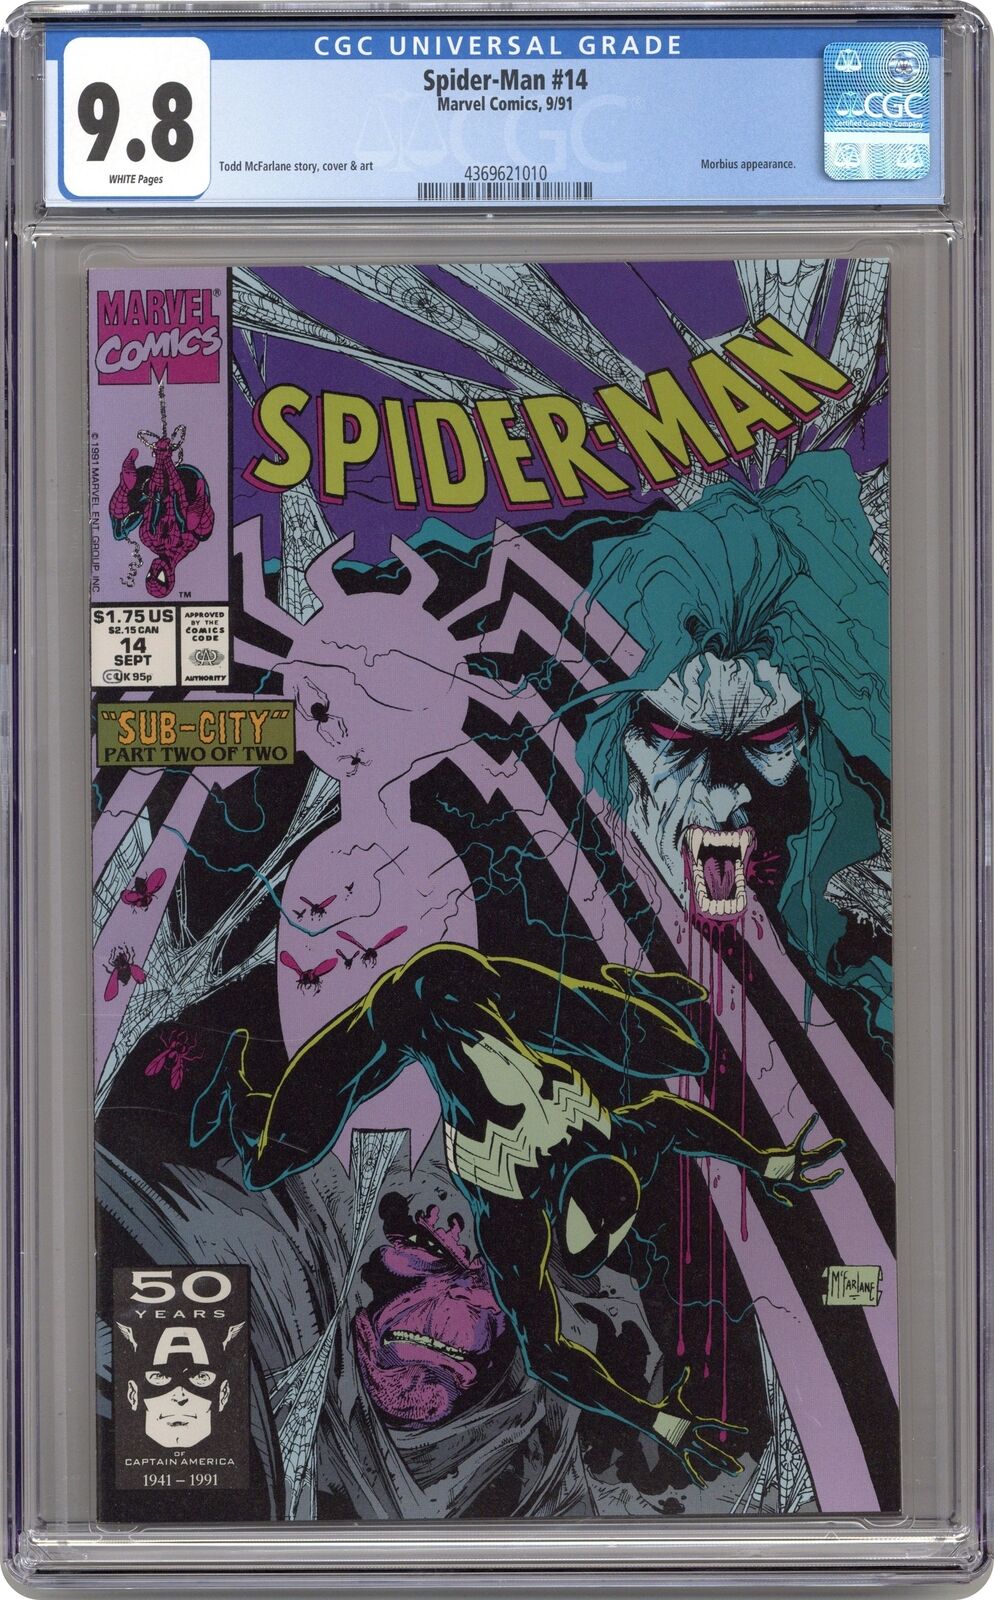 Spider-Man #14 CGC 9.8 1991 4369621010